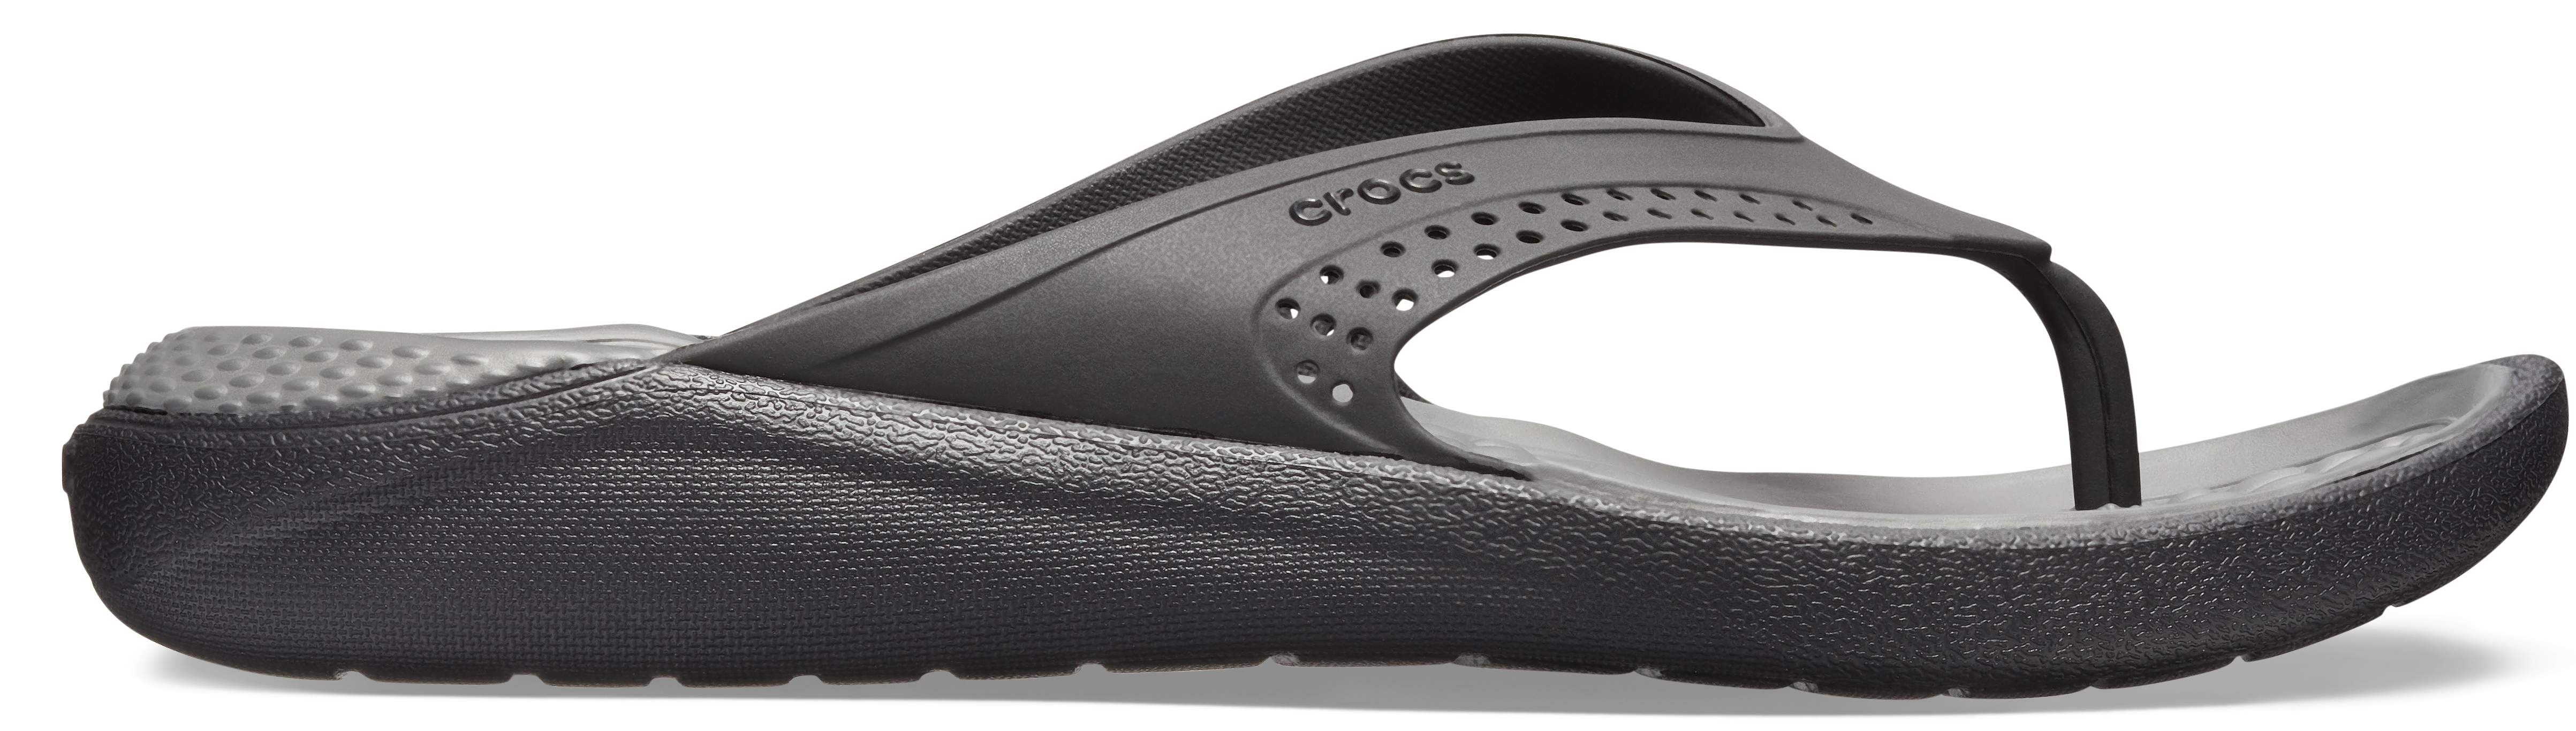 crocs literide flip review